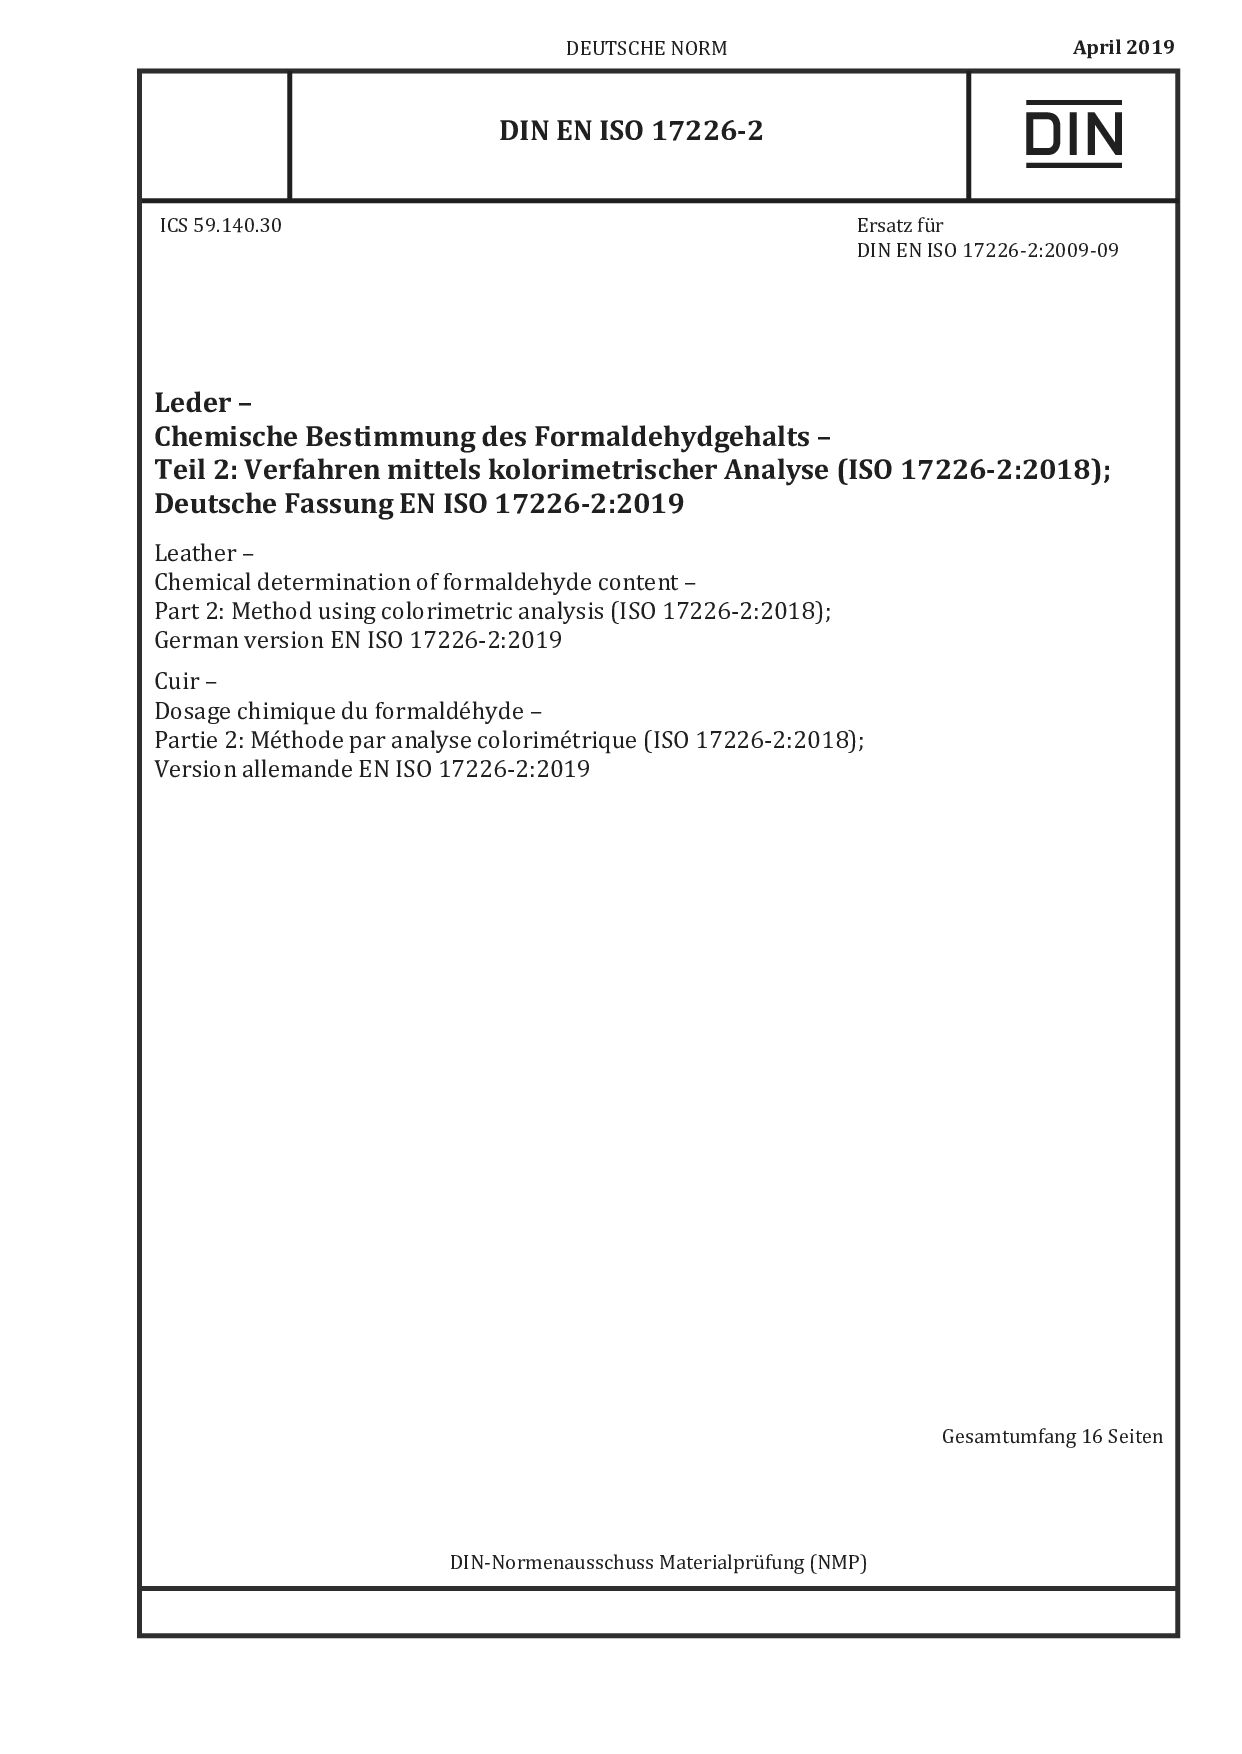 DIN EN ISO 17226-2:2019-04